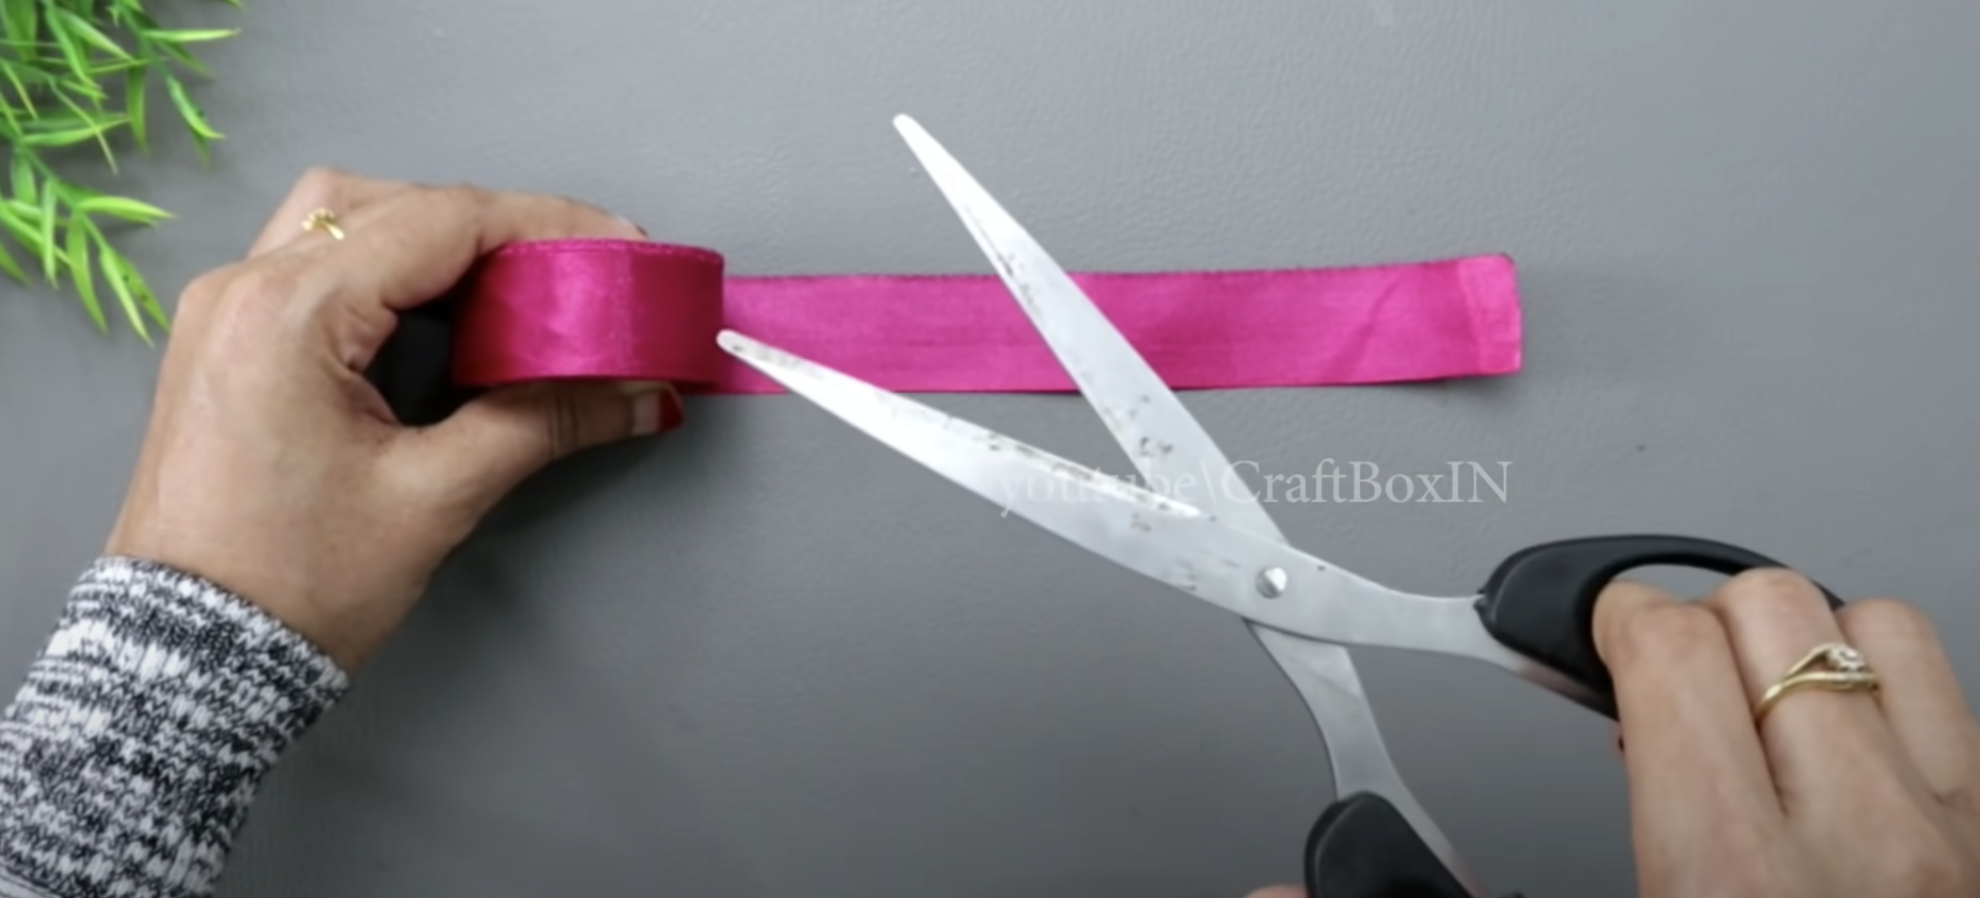 Una forma fácil de hacer bonitas rosas decorativas: ¡sólo necesitas cinta de raso, una regla y tijeras!